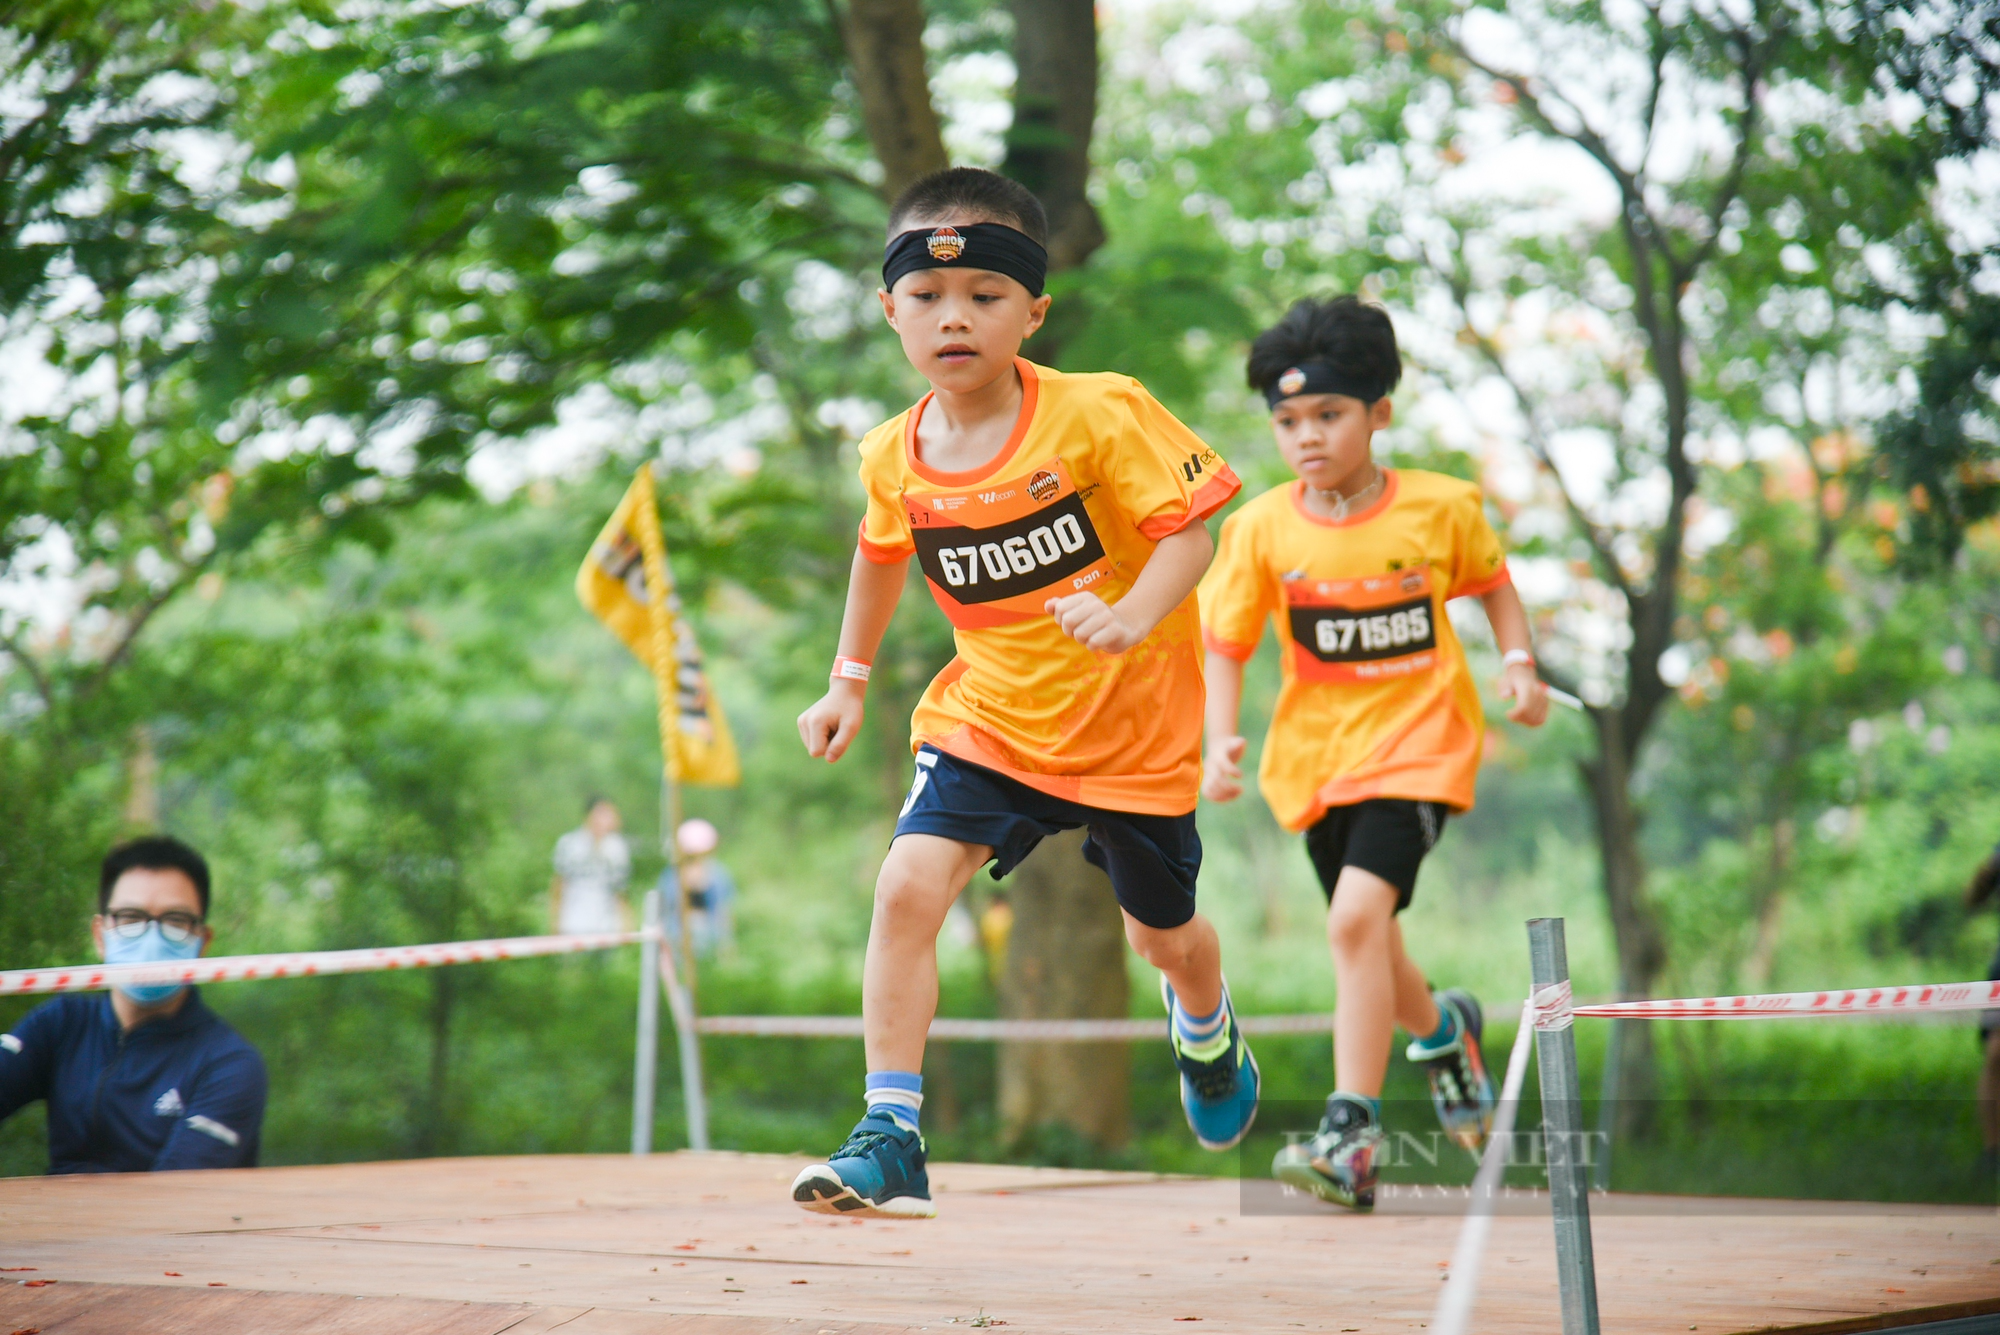 Hơn 1.500 runner nhí tham gia giải đấu vượt chướng ngại vật được tổ chức tại Hà Nội - Ảnh 3.